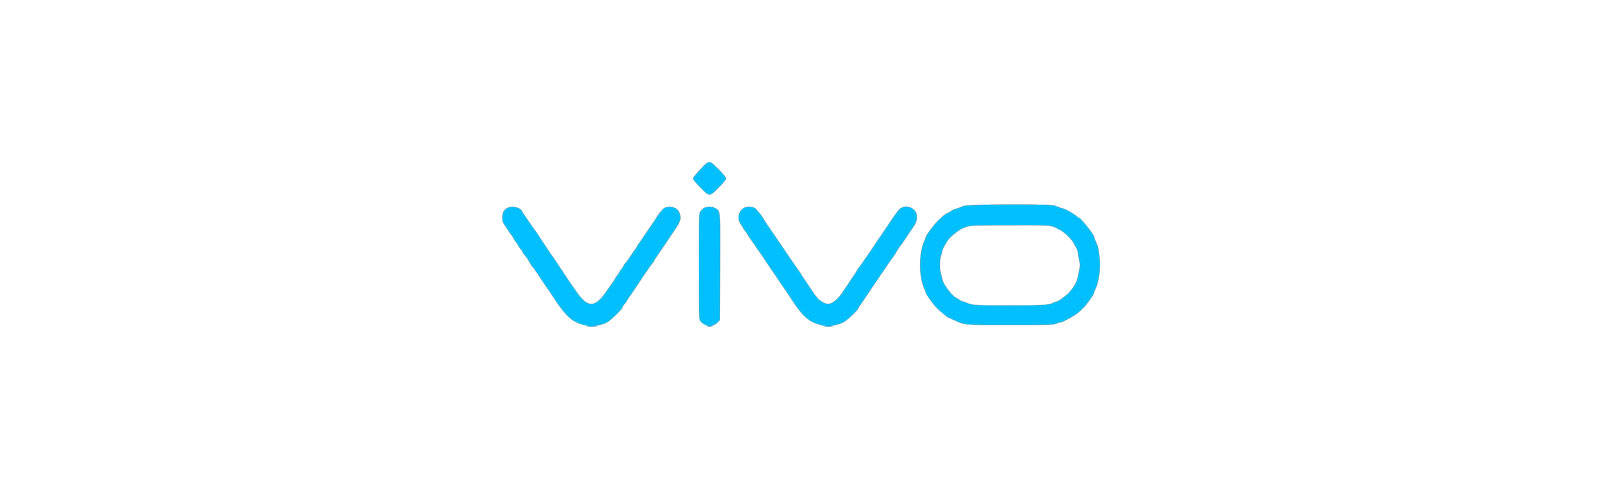 Vivo  sẽ gia nhập thị trường châu Âu vào năm 2020